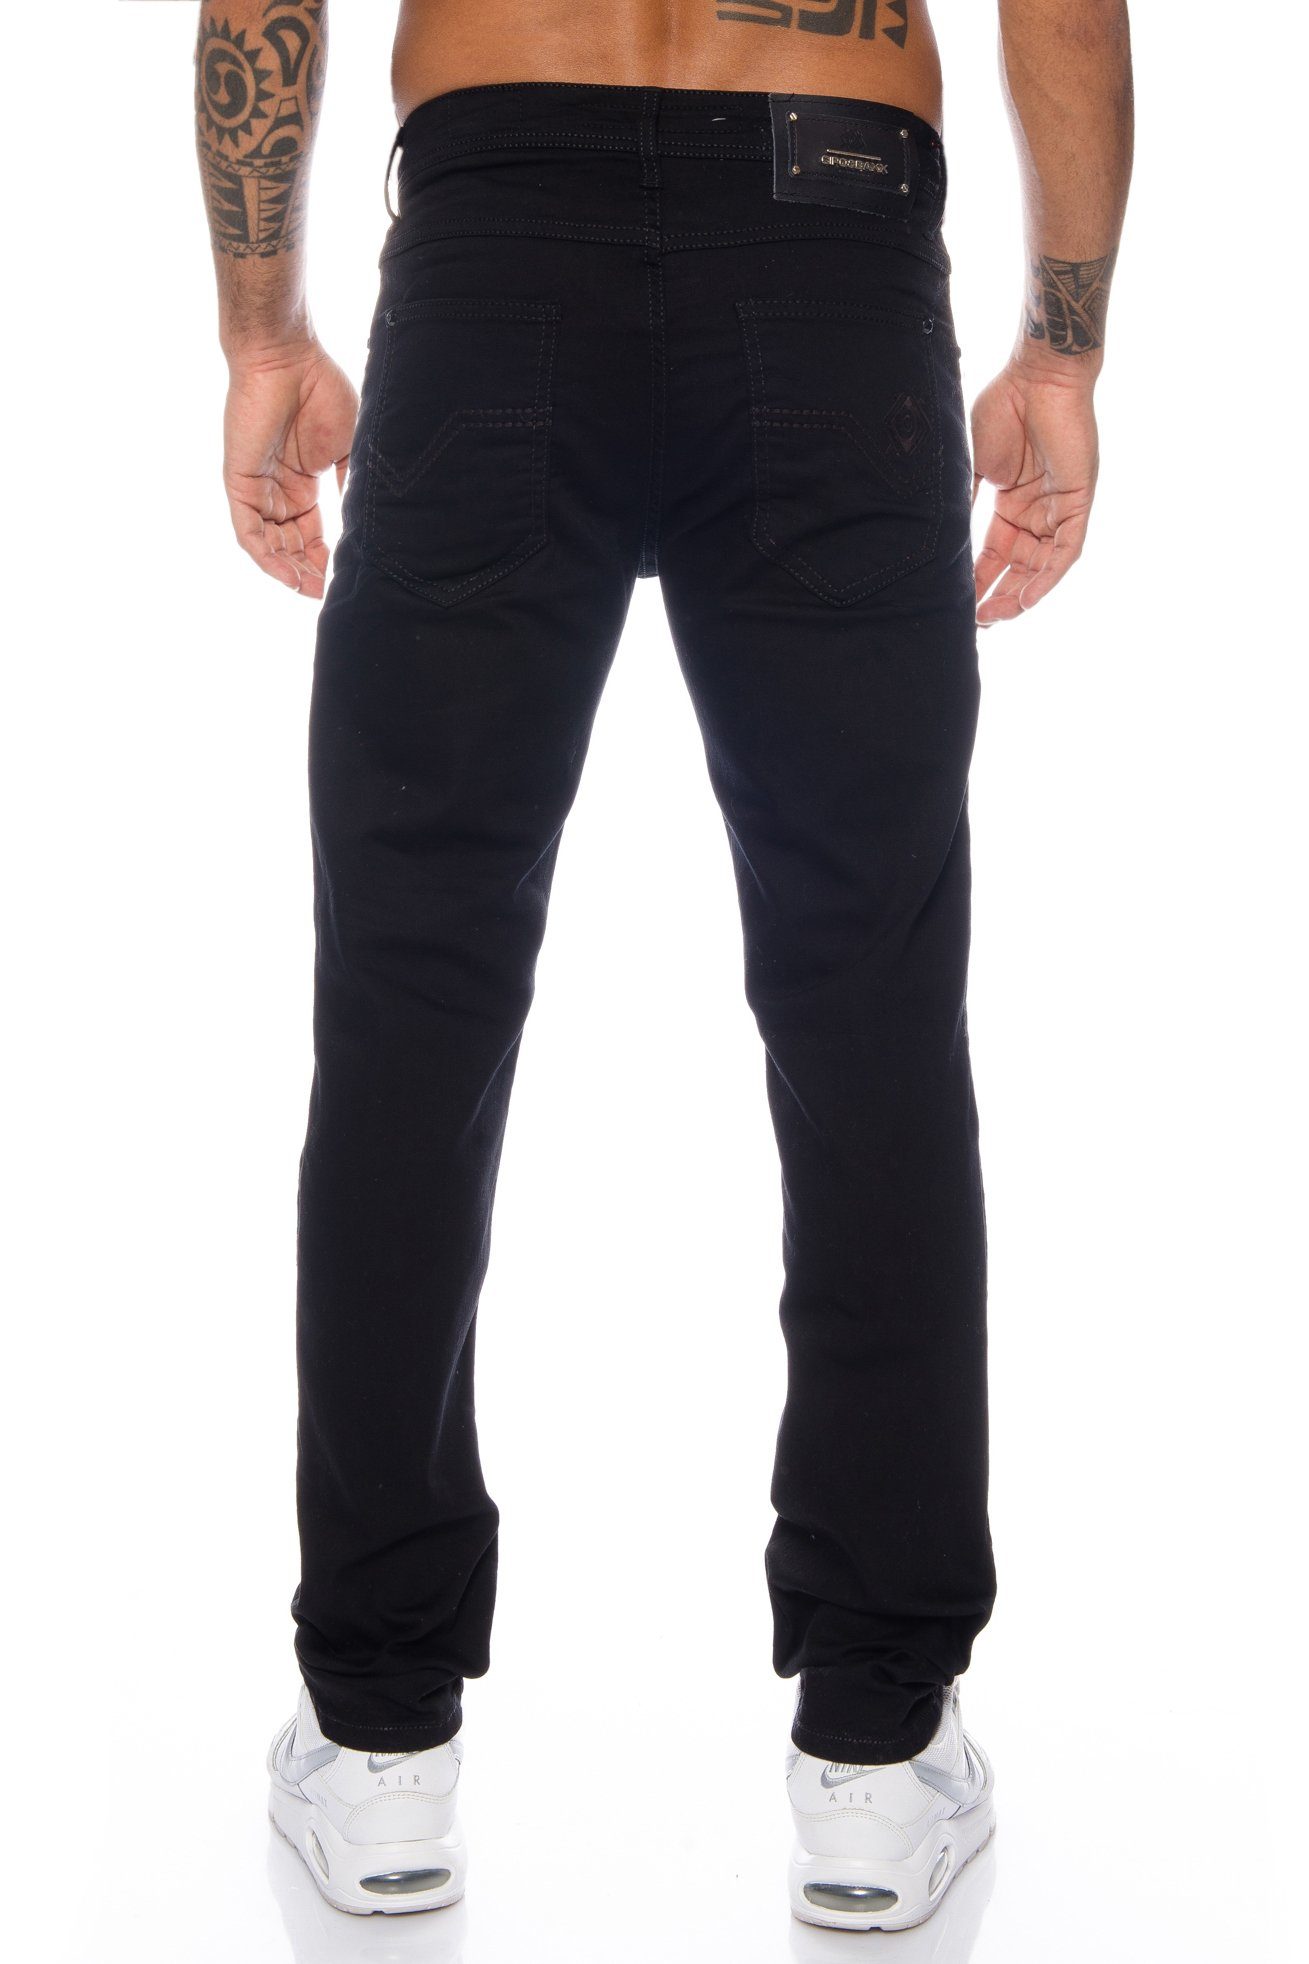 Cipo & Baxx Slim-fit-Jeans Herren Material im Nähten basic angenehmen Jeans mit Look für Tragekomfort dicken dezenten Hose Elastisches